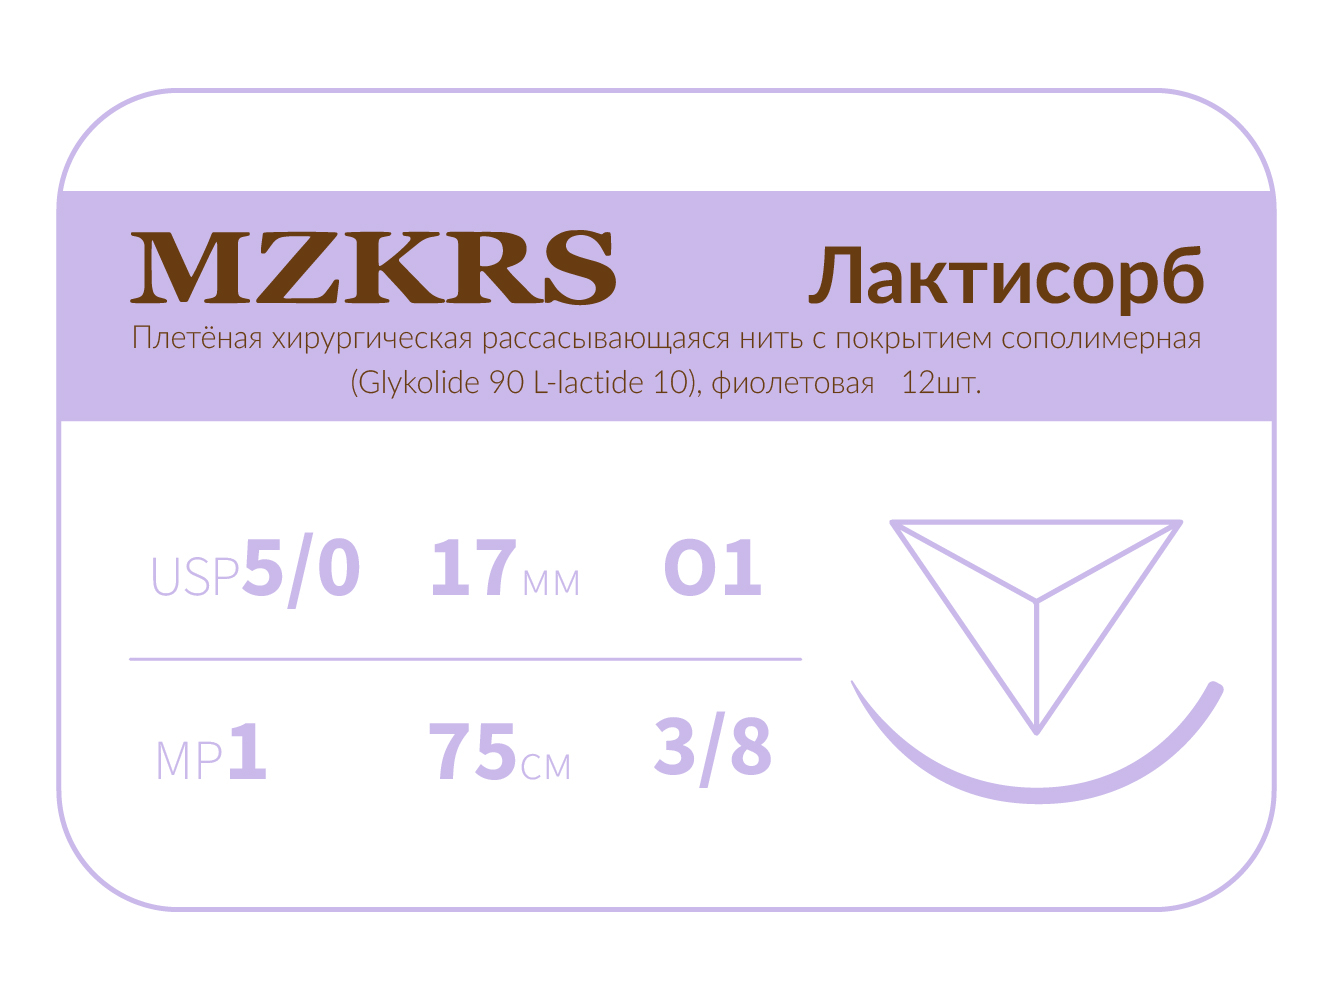 1738О1 Premium-5/0 (1)75 ПГЛ ЛАКТИСОРБ хирургическая нить сополимерная, обратно-режущая игла, MZKRS (Россия)